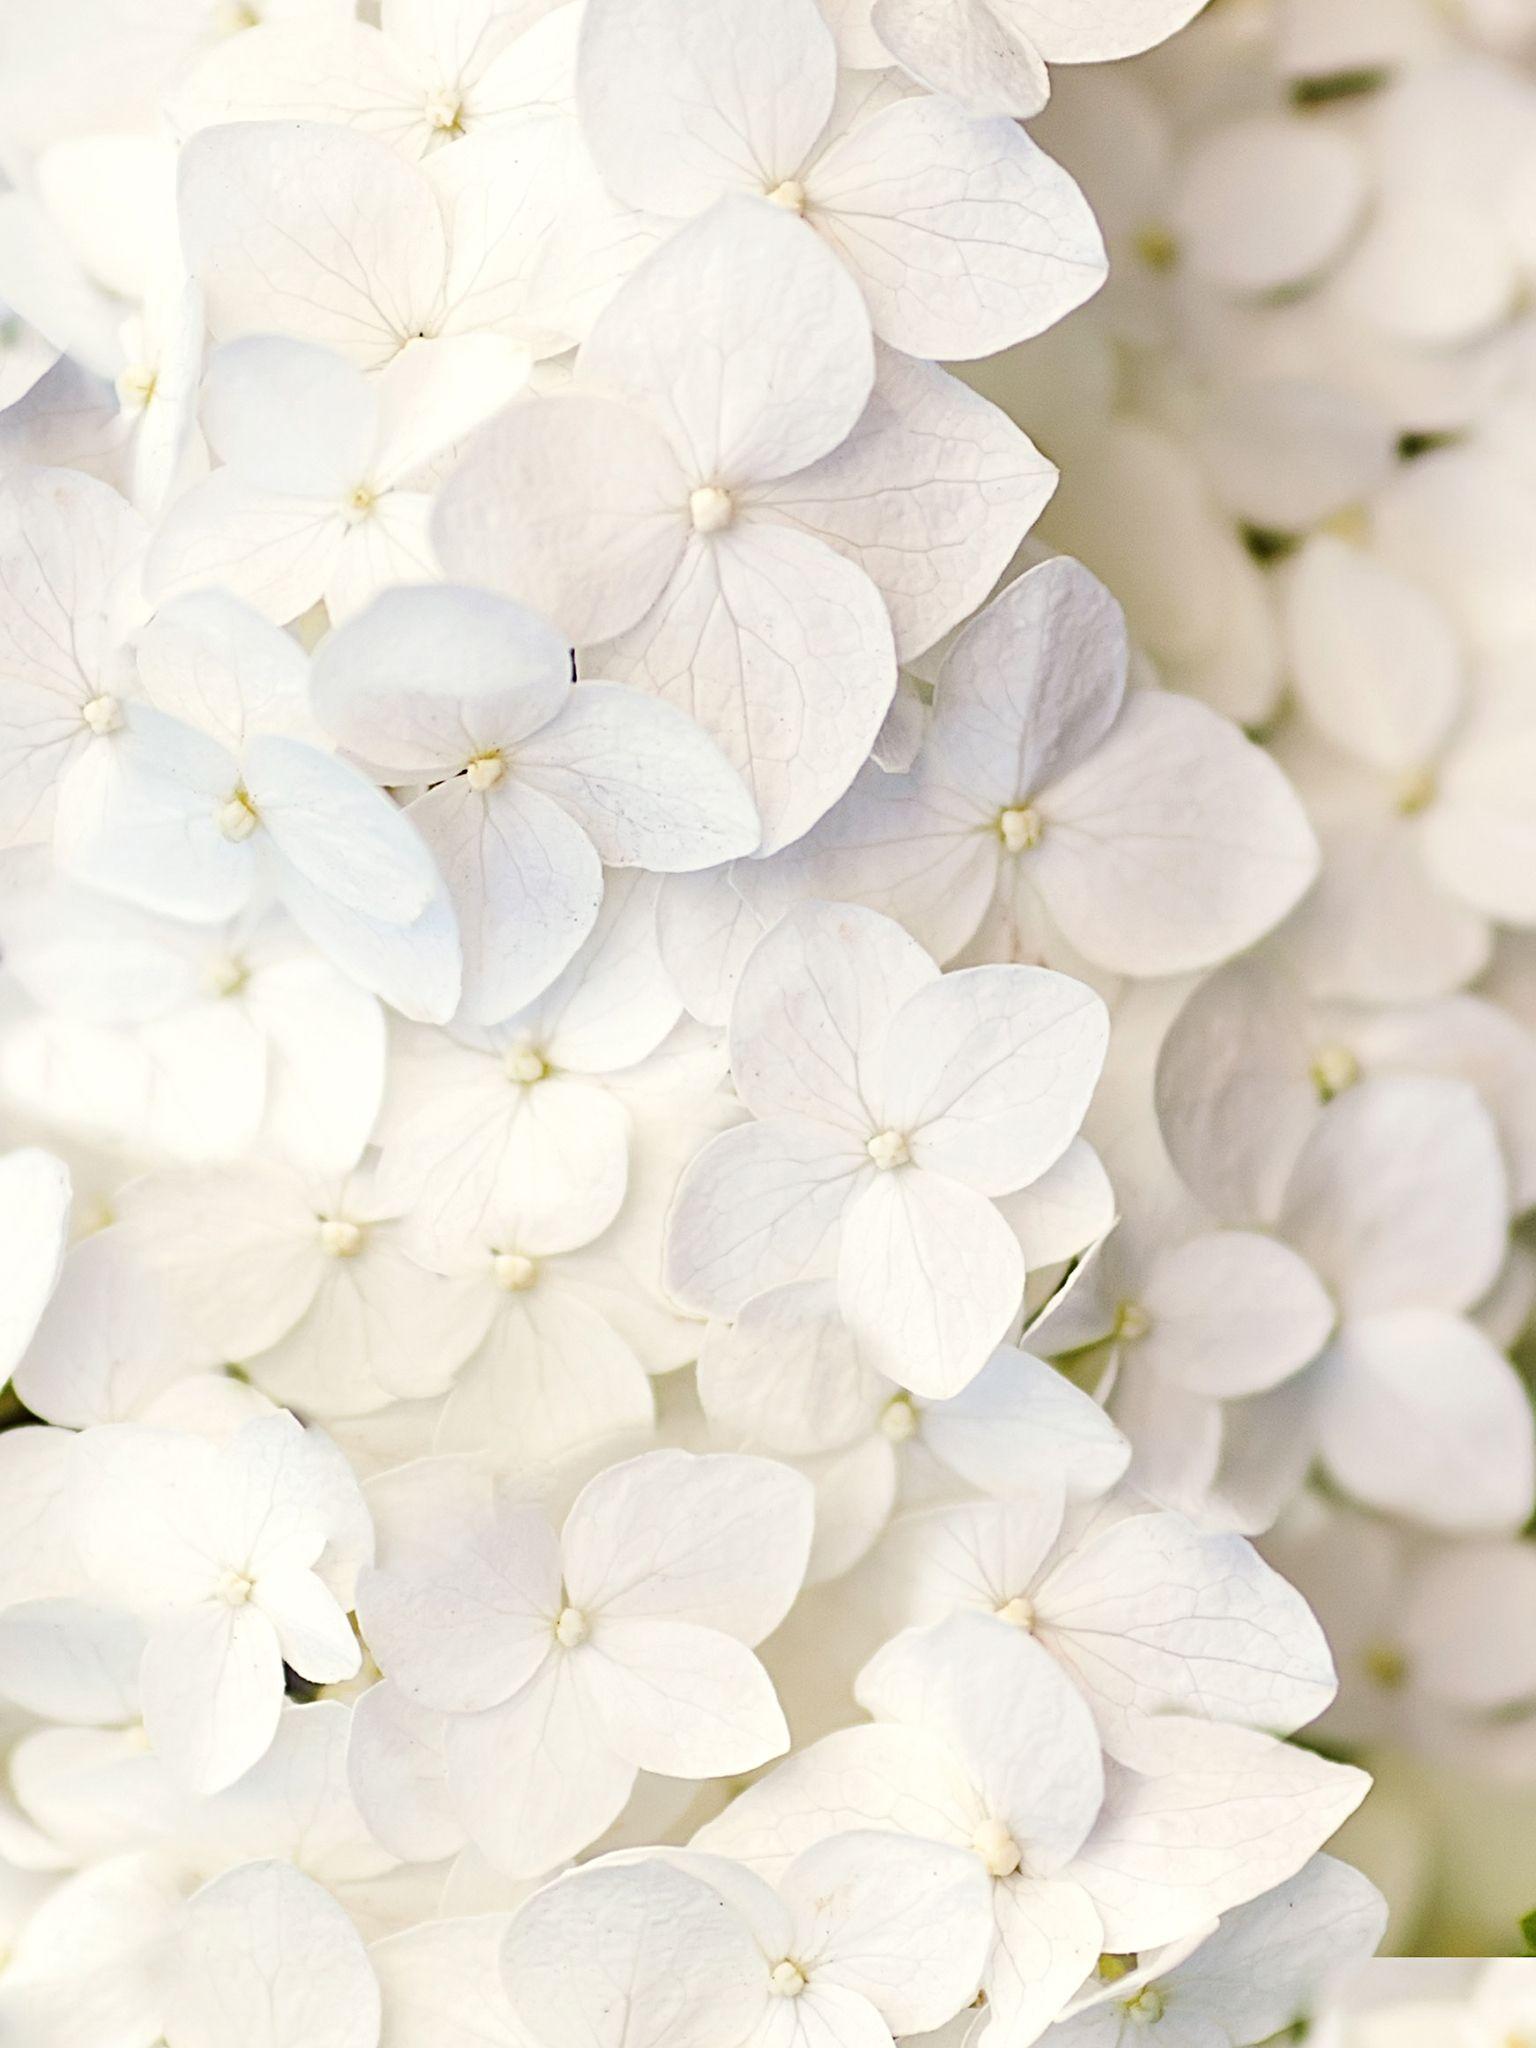 White flowers. yuhu!. Fondos, Fondos para iphone, Fondos de flores